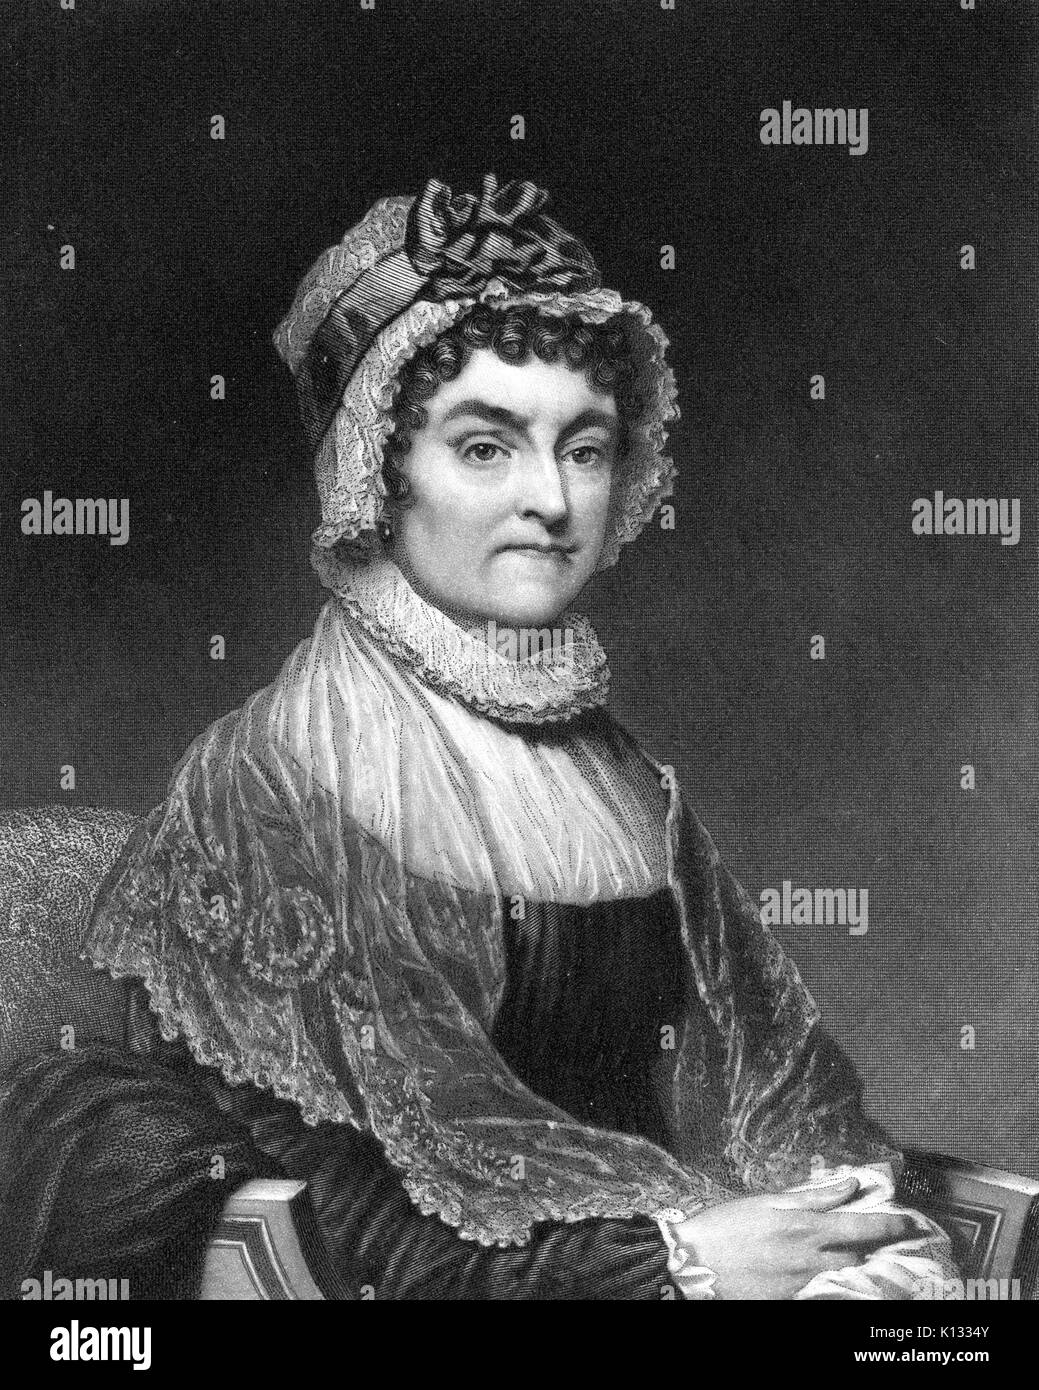 Abigail Adams, sitzenden Portrait, Stahlplatte Gravur der First Lady und Ehefrau des Präsidenten der Vereinigten Staaten John Adams, der mit einem strengen Gesichtsausdruck, das Tragen einer Mütze und Schal, 1800. Stockfoto